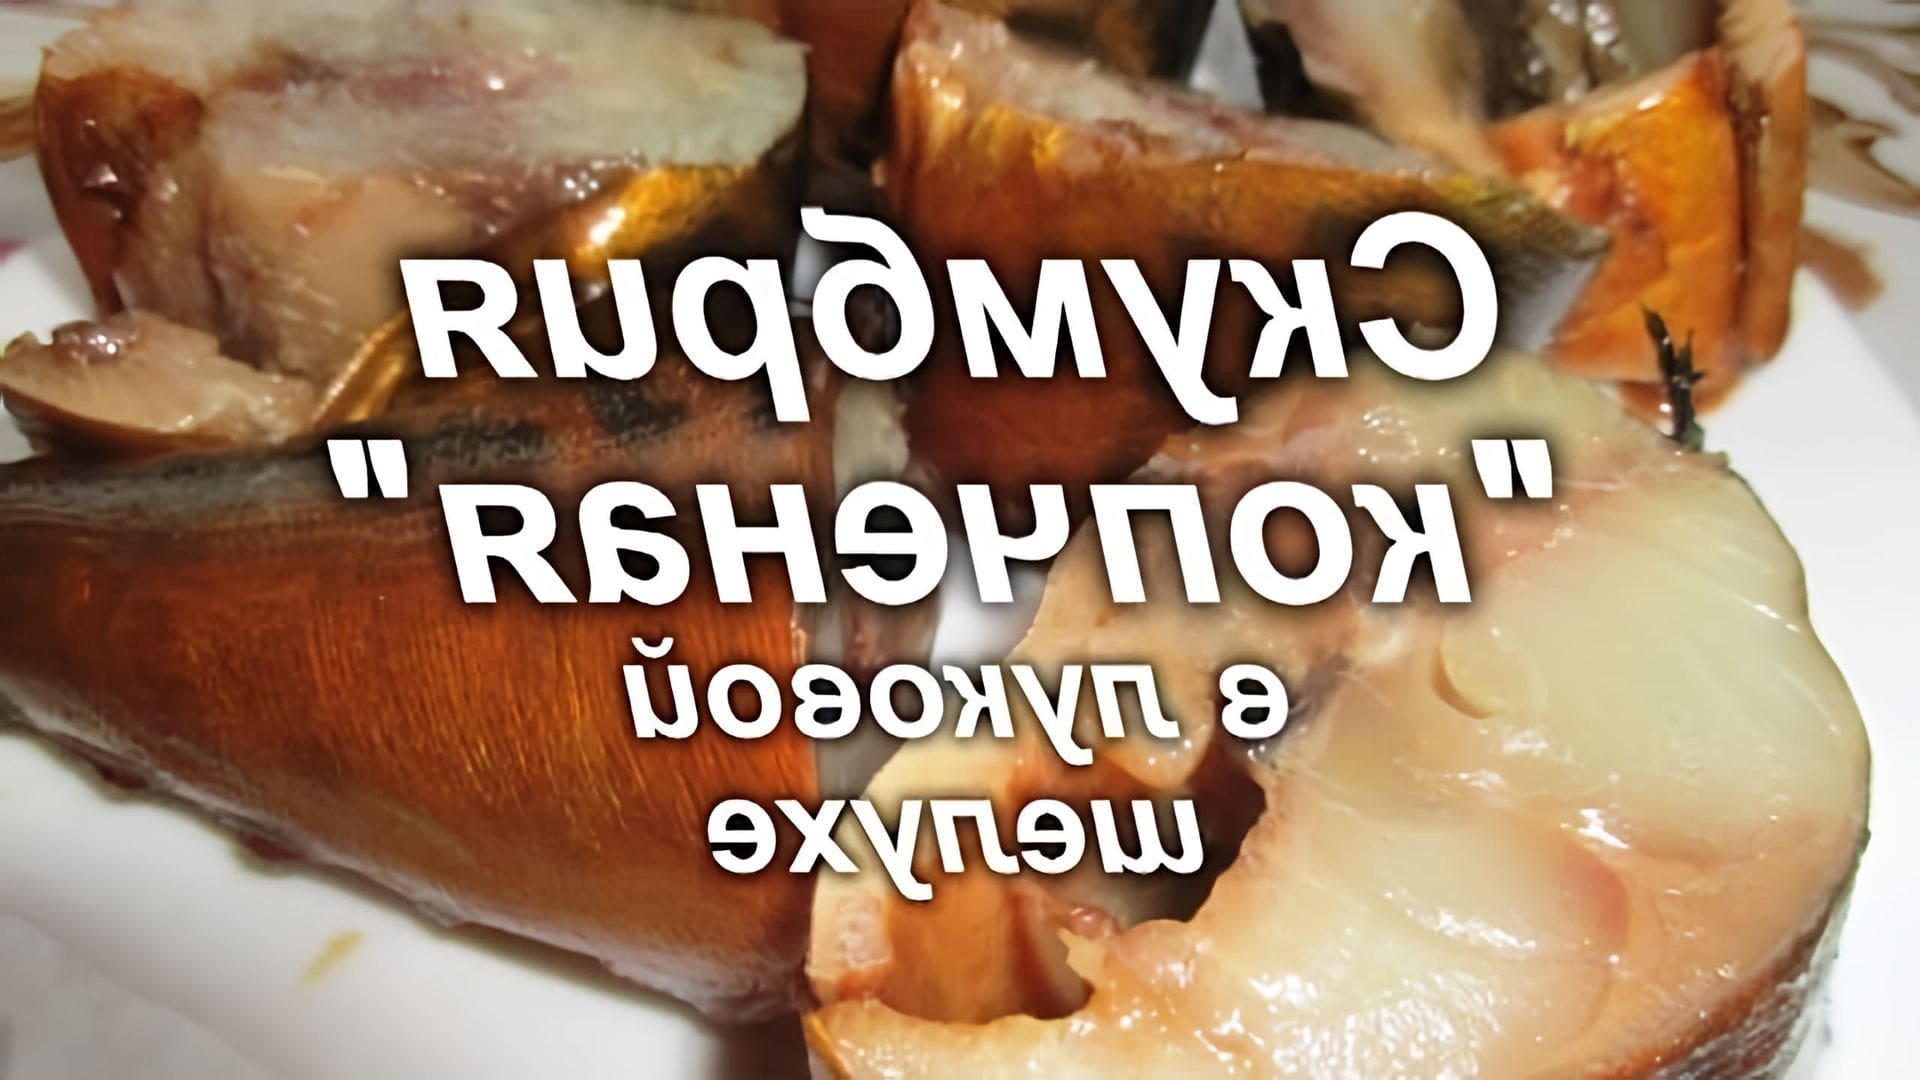 В этом видео демонстрируется рецепт приготовления копченой рыбы без копчения, используя луковую шелуху